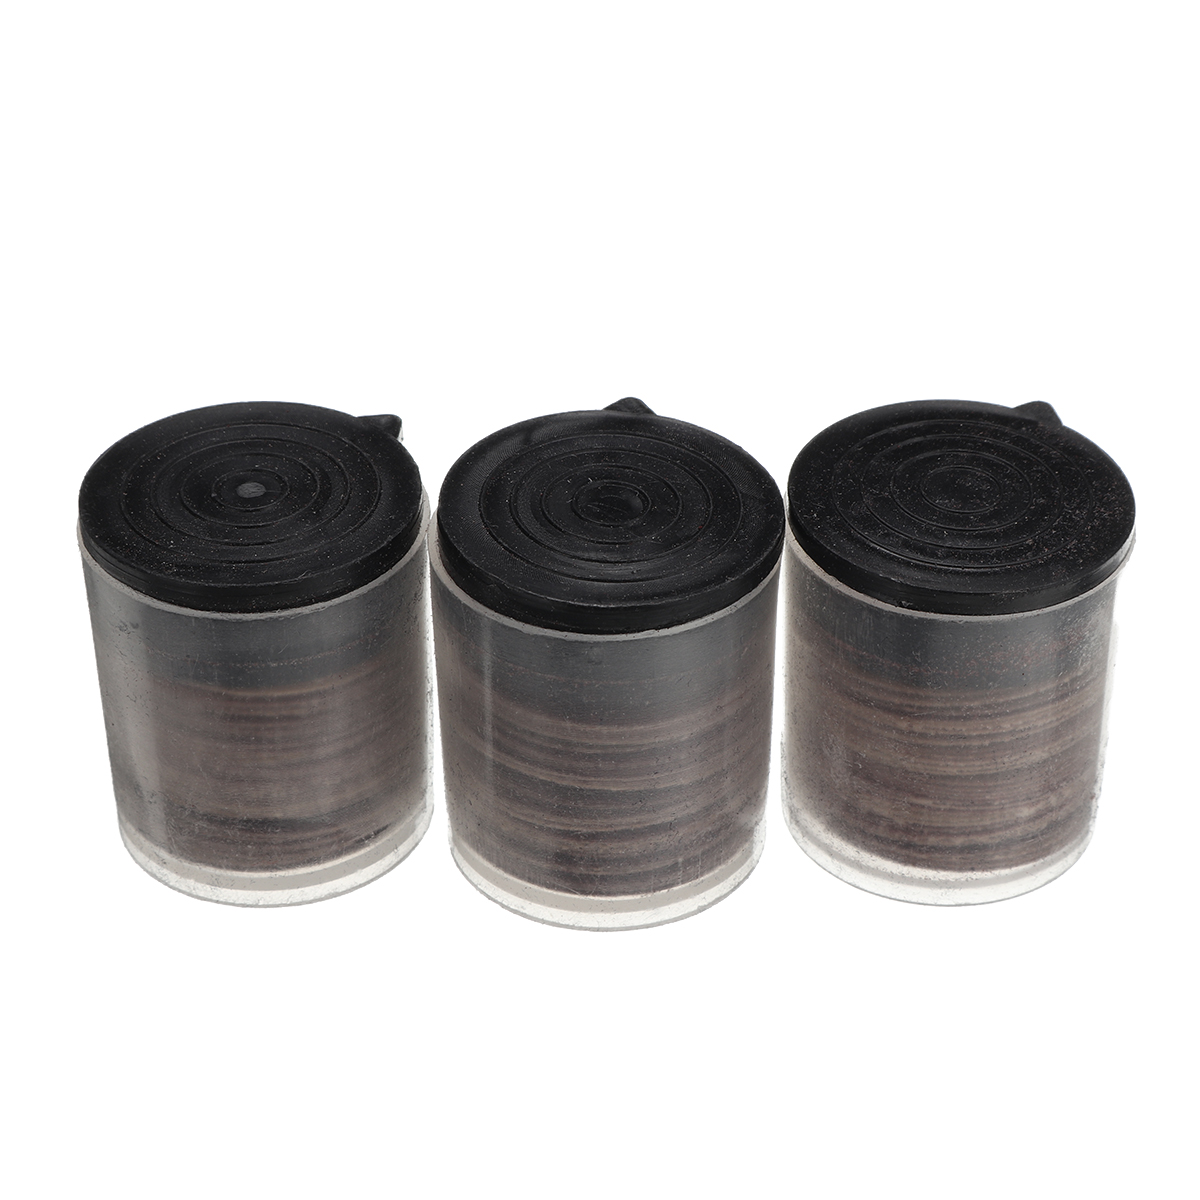 Drillpro-Abrasive-Tools-Sanding-Bands-Set-206pcs-Sanding-Drum-Set-With-Sanding-Mandrels-For-Dremel-R-1803515-6